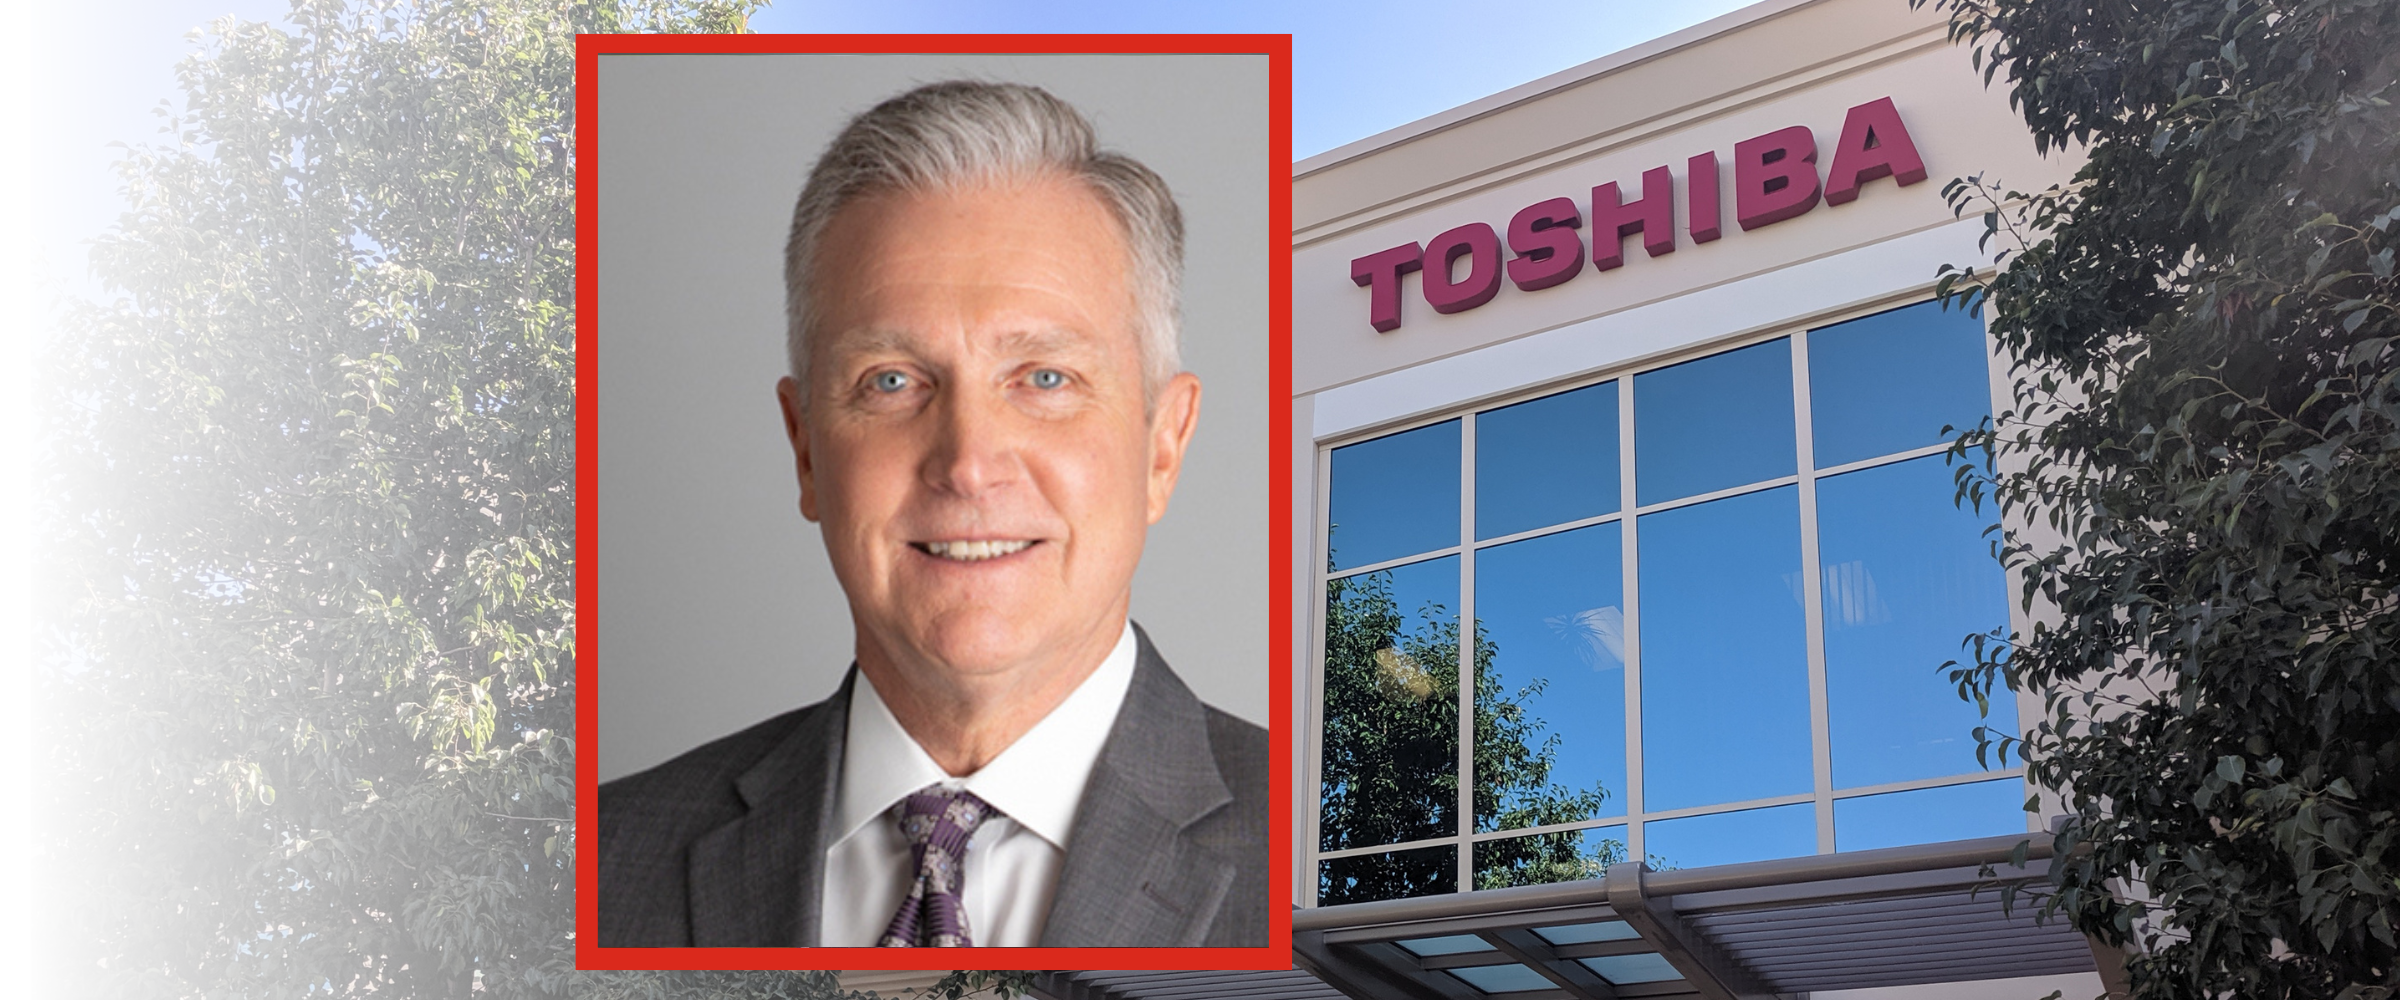 Toshiba CEO Larry White